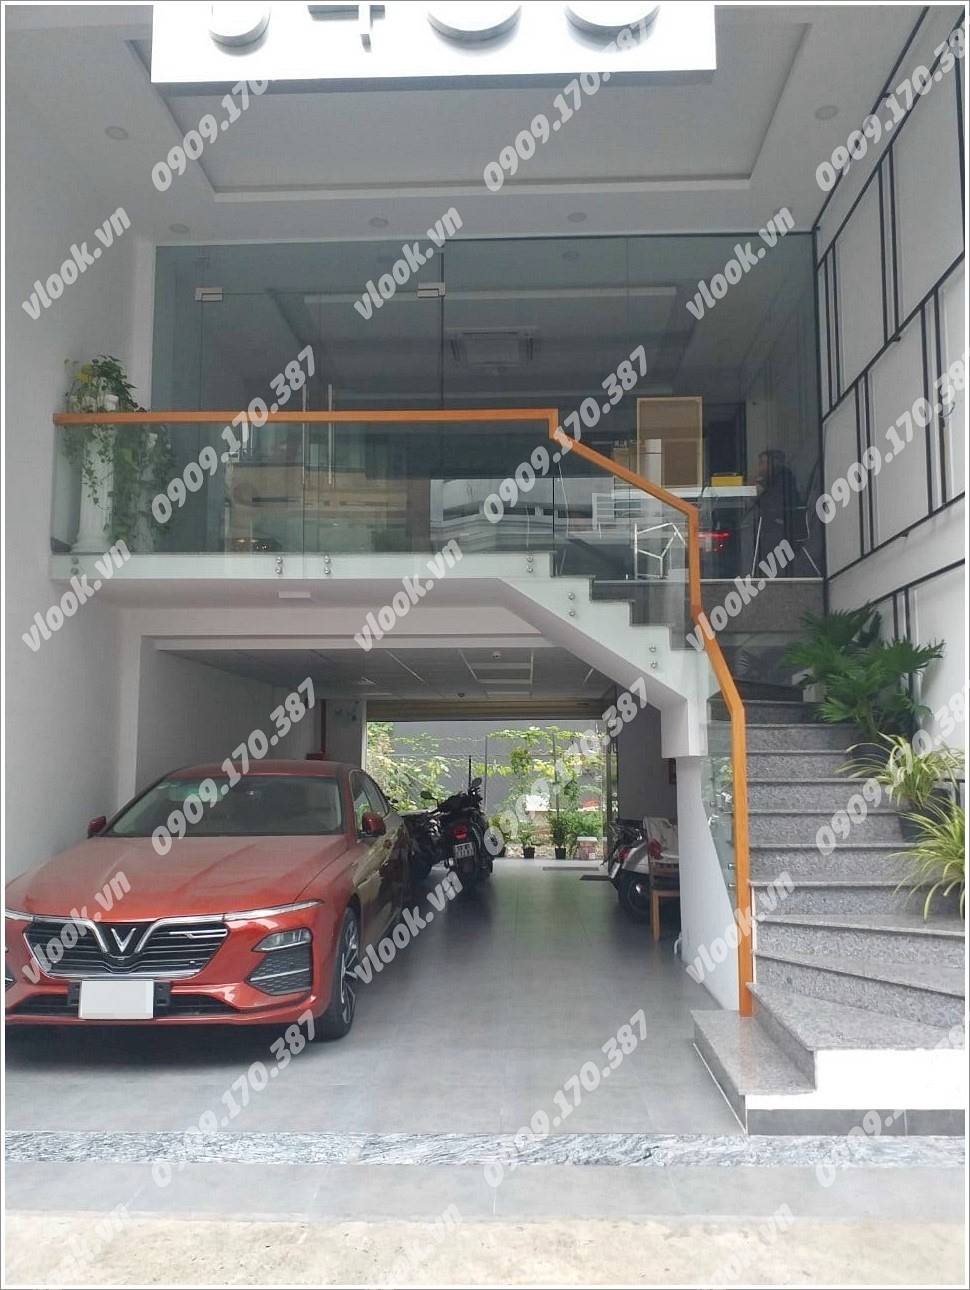 Cao ốc cho thuê văn phòng tòa nhà 54oG Building, Phan Ngữ, Quận 1, TPHCM - vlook.vn